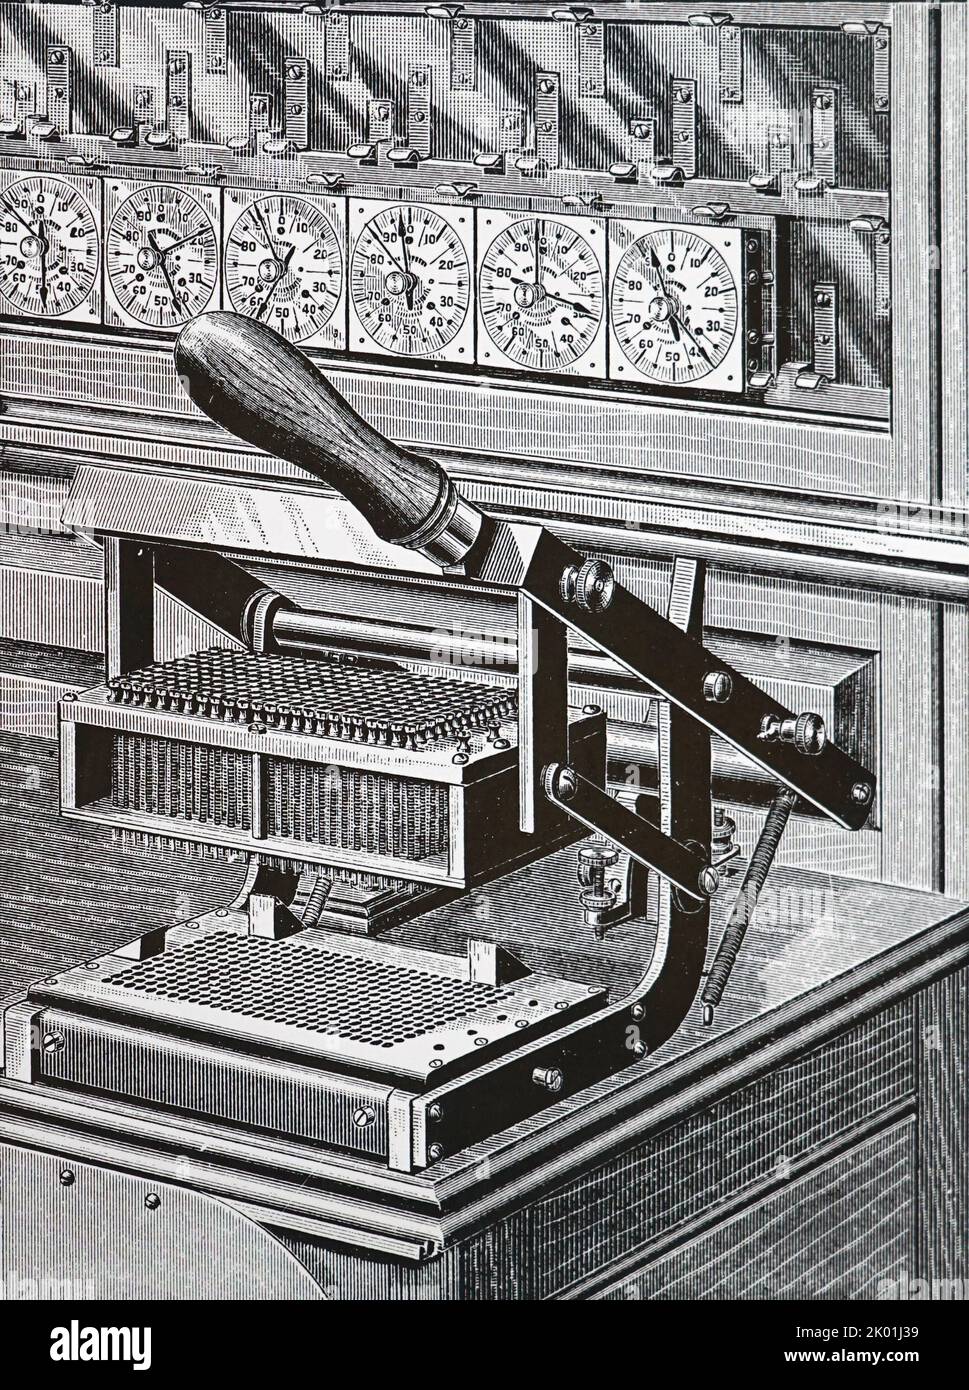 Scheda Hollerith. Primo piano della pressa di chiusura del circuito. Questa macchina è stata utilizzata per la prima volta nel censimento degli Stati Uniti del 1890. Da Park Benjamin Modern Mechanism, Londra e New York, 1892. Foto Stock